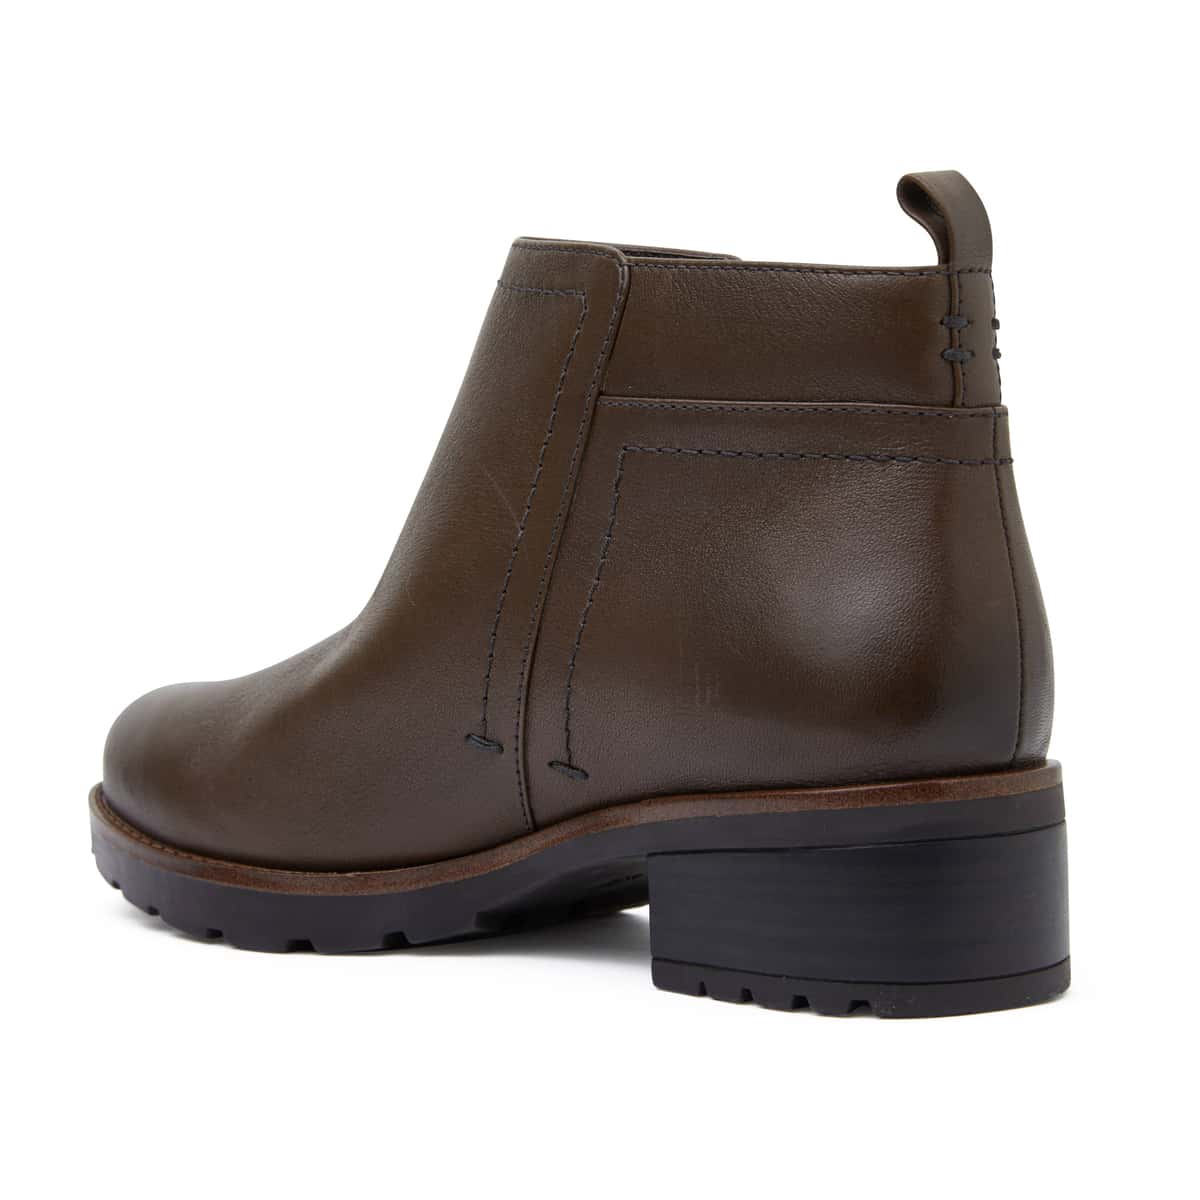 Ibis Boot in Khaki Leather